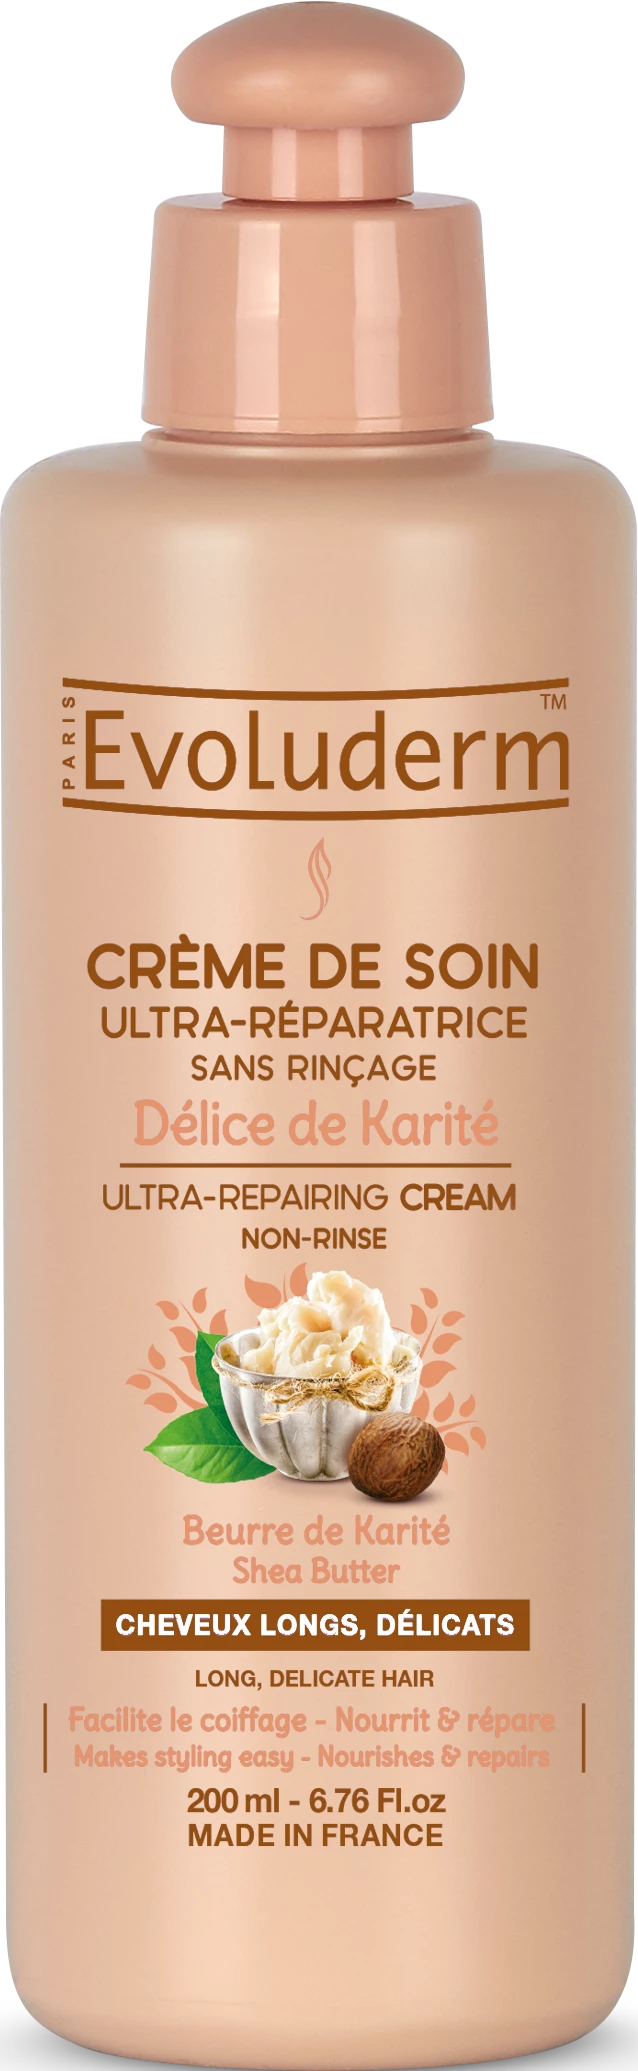 Crème De Soin Ultra-réparatrice Délice De Karité 200ml - Evoluderm